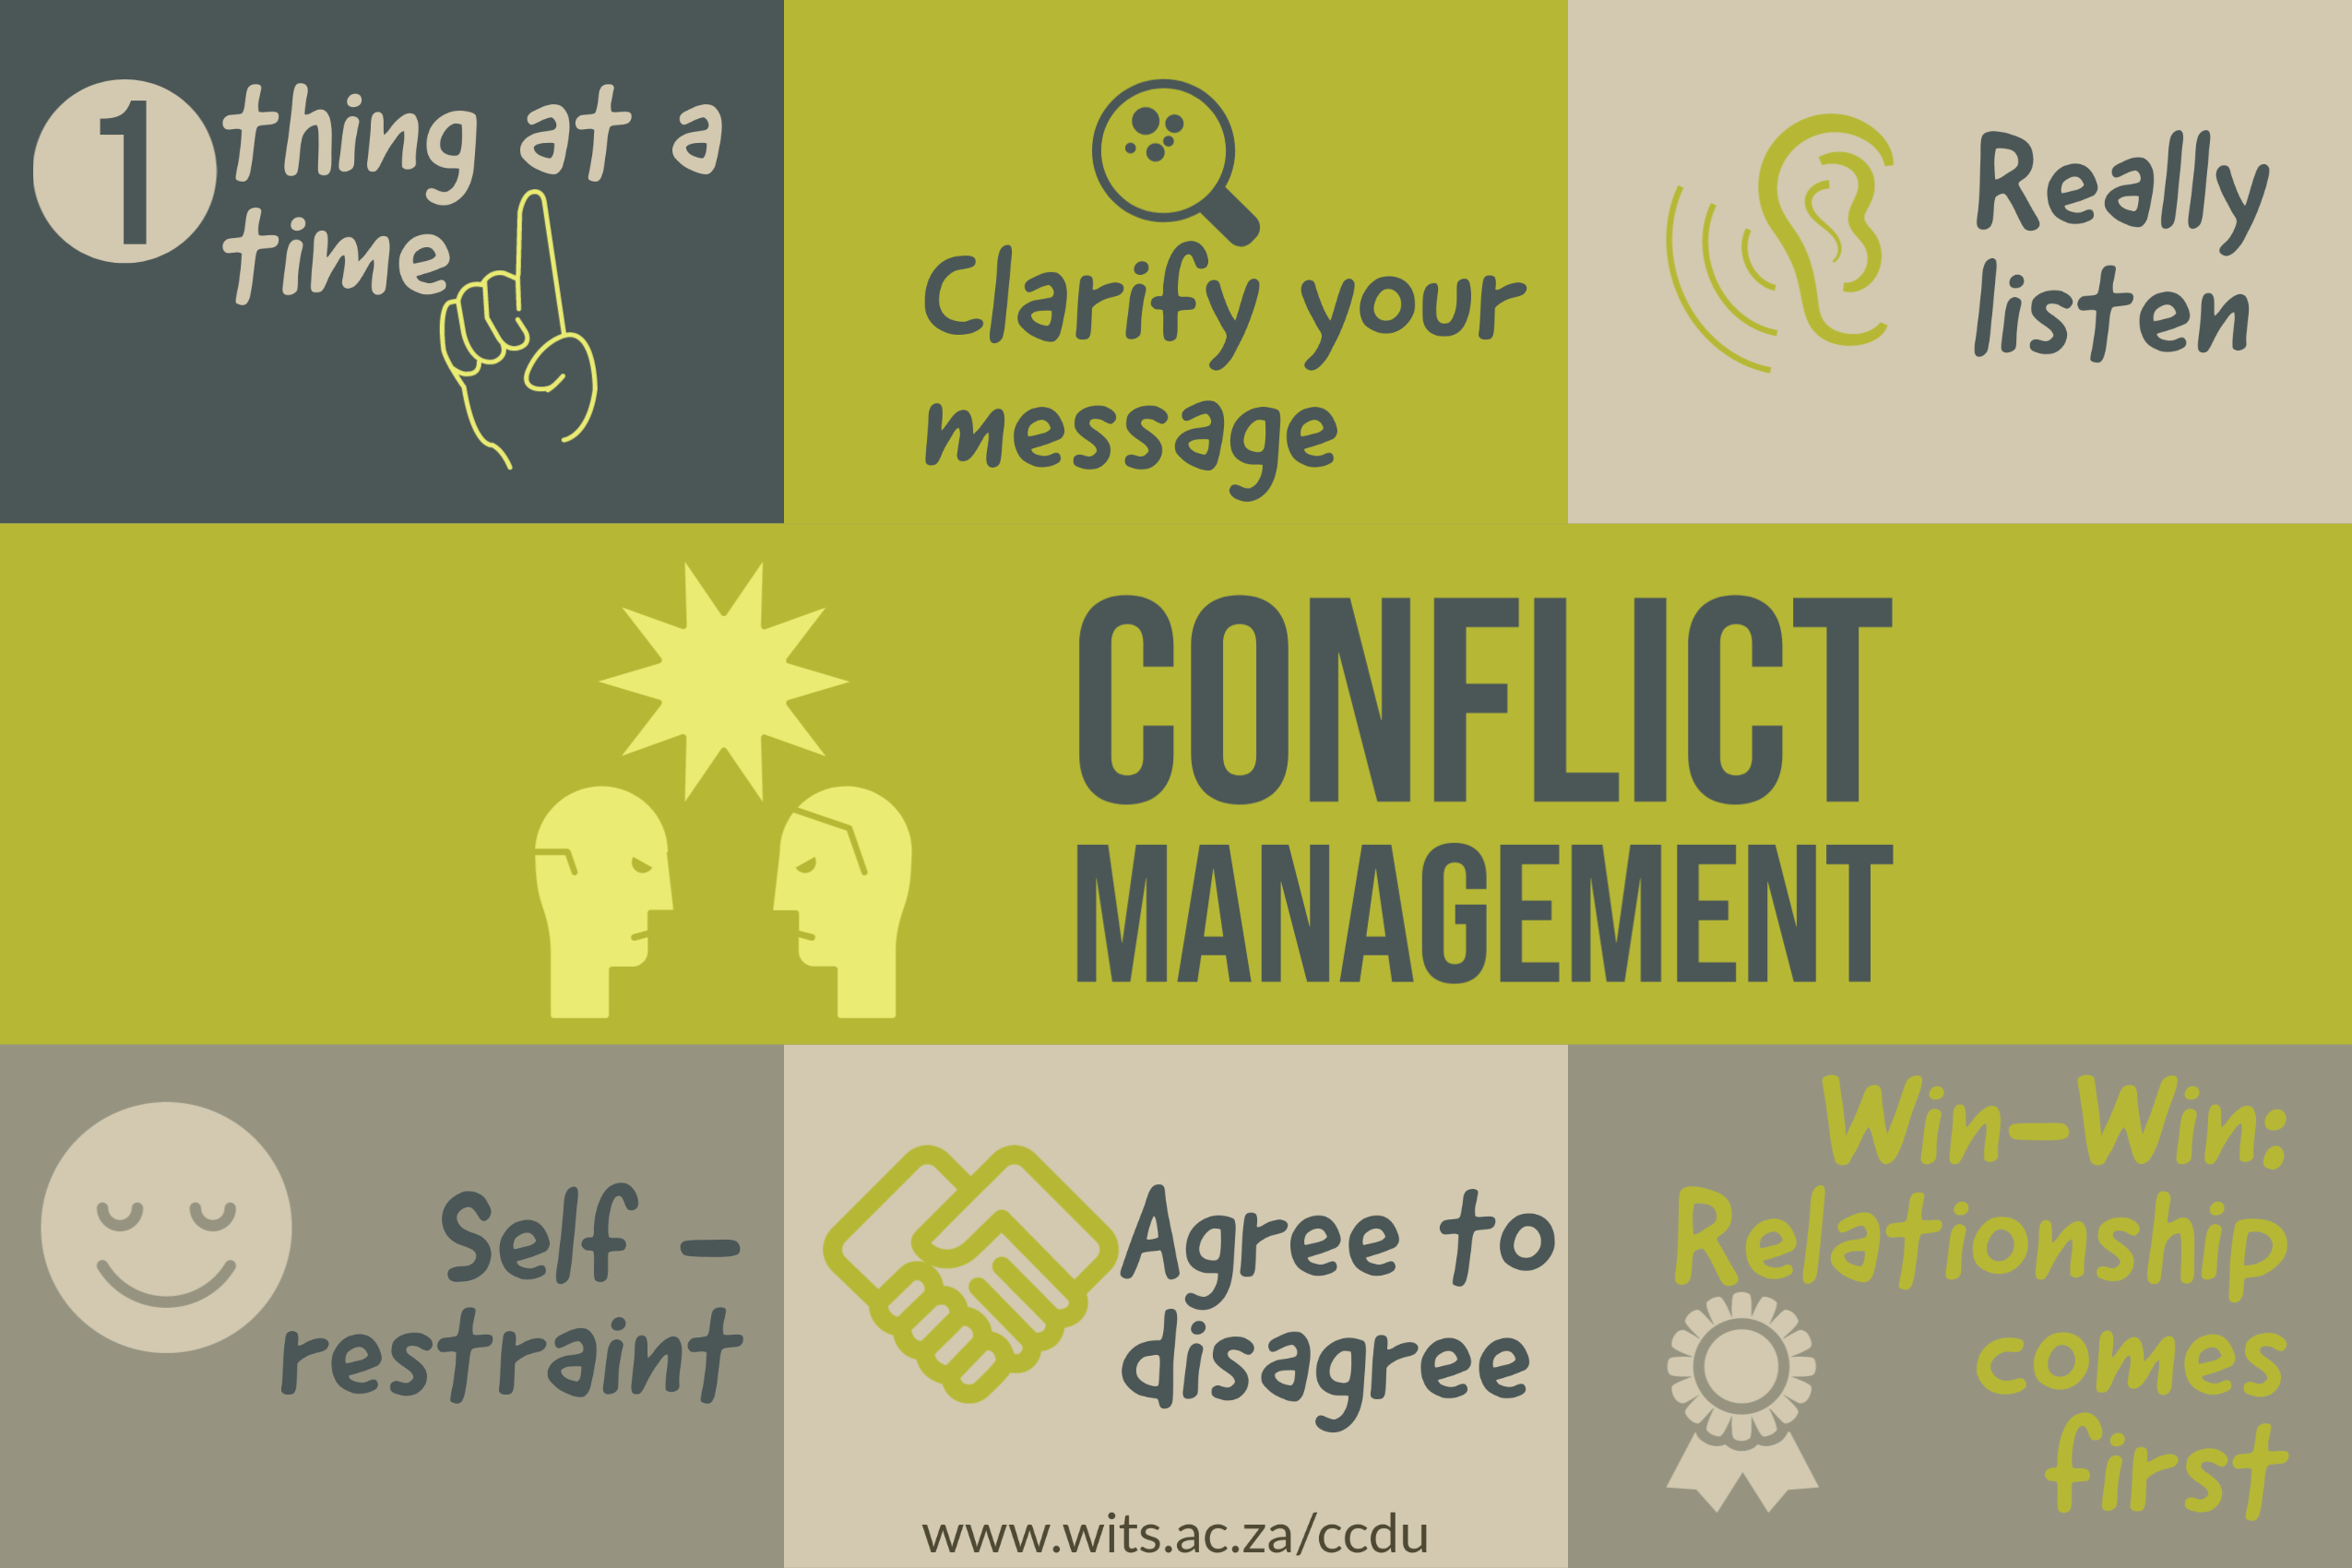 Conflict Management Services